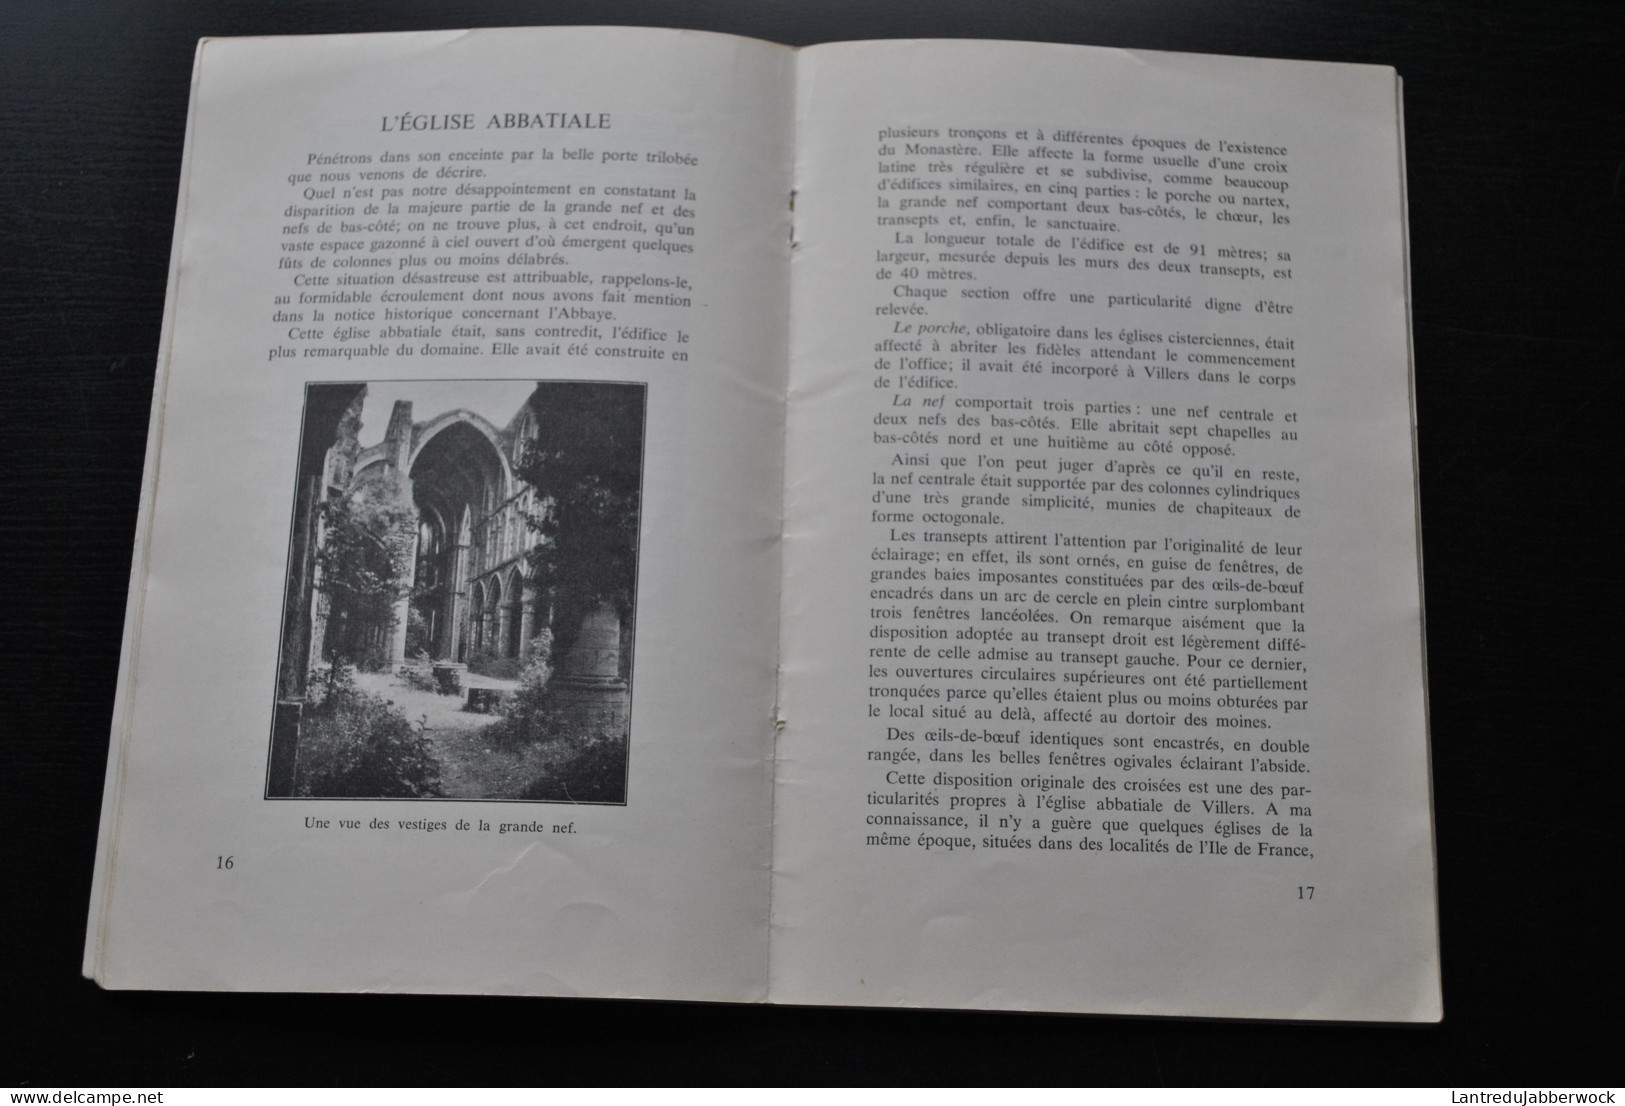 JACOB Aristide L'Abbaye De Villers-La-Ville Guide Officiel Illustré 1961 + Dépliant Publicitaire Régionalisme Brabant - Belgique